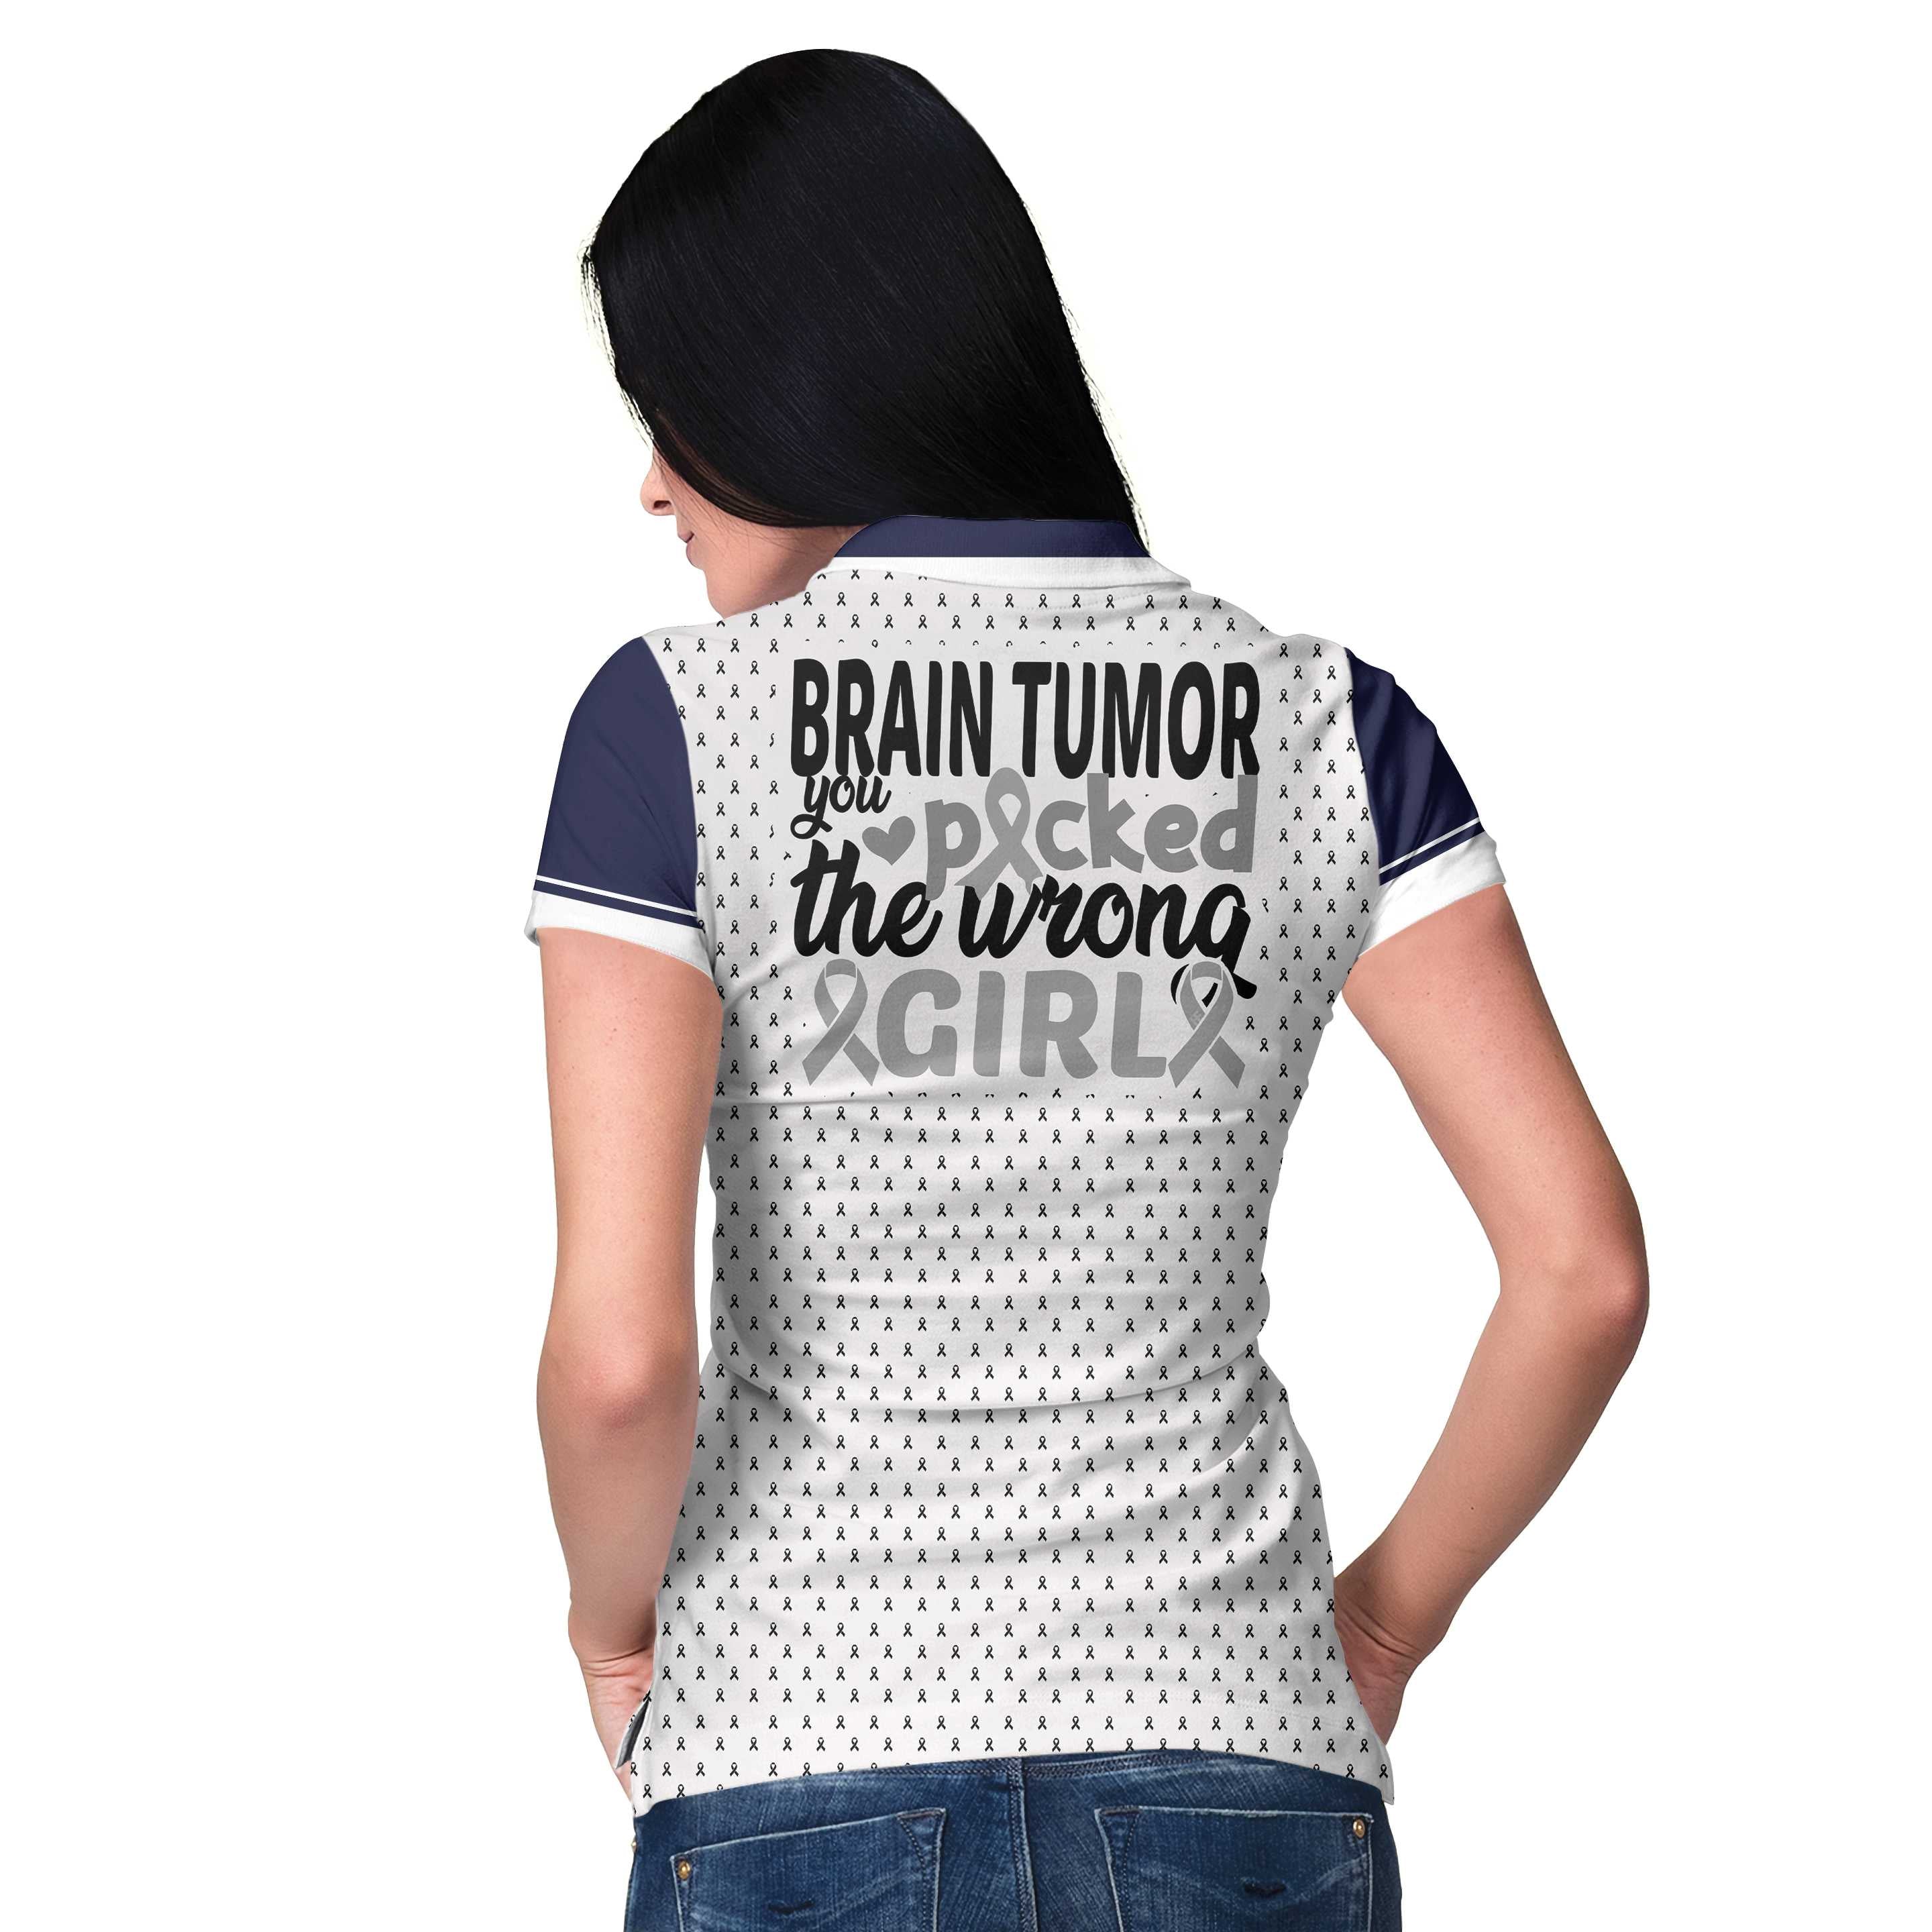 You Picked The Wrong Girl Brain Tumor Awareness Short Sleeve Women Polo Shirt/ Brain Tumor Shirt For Women/ Cool Brain Tumor Support Gift Coolspod